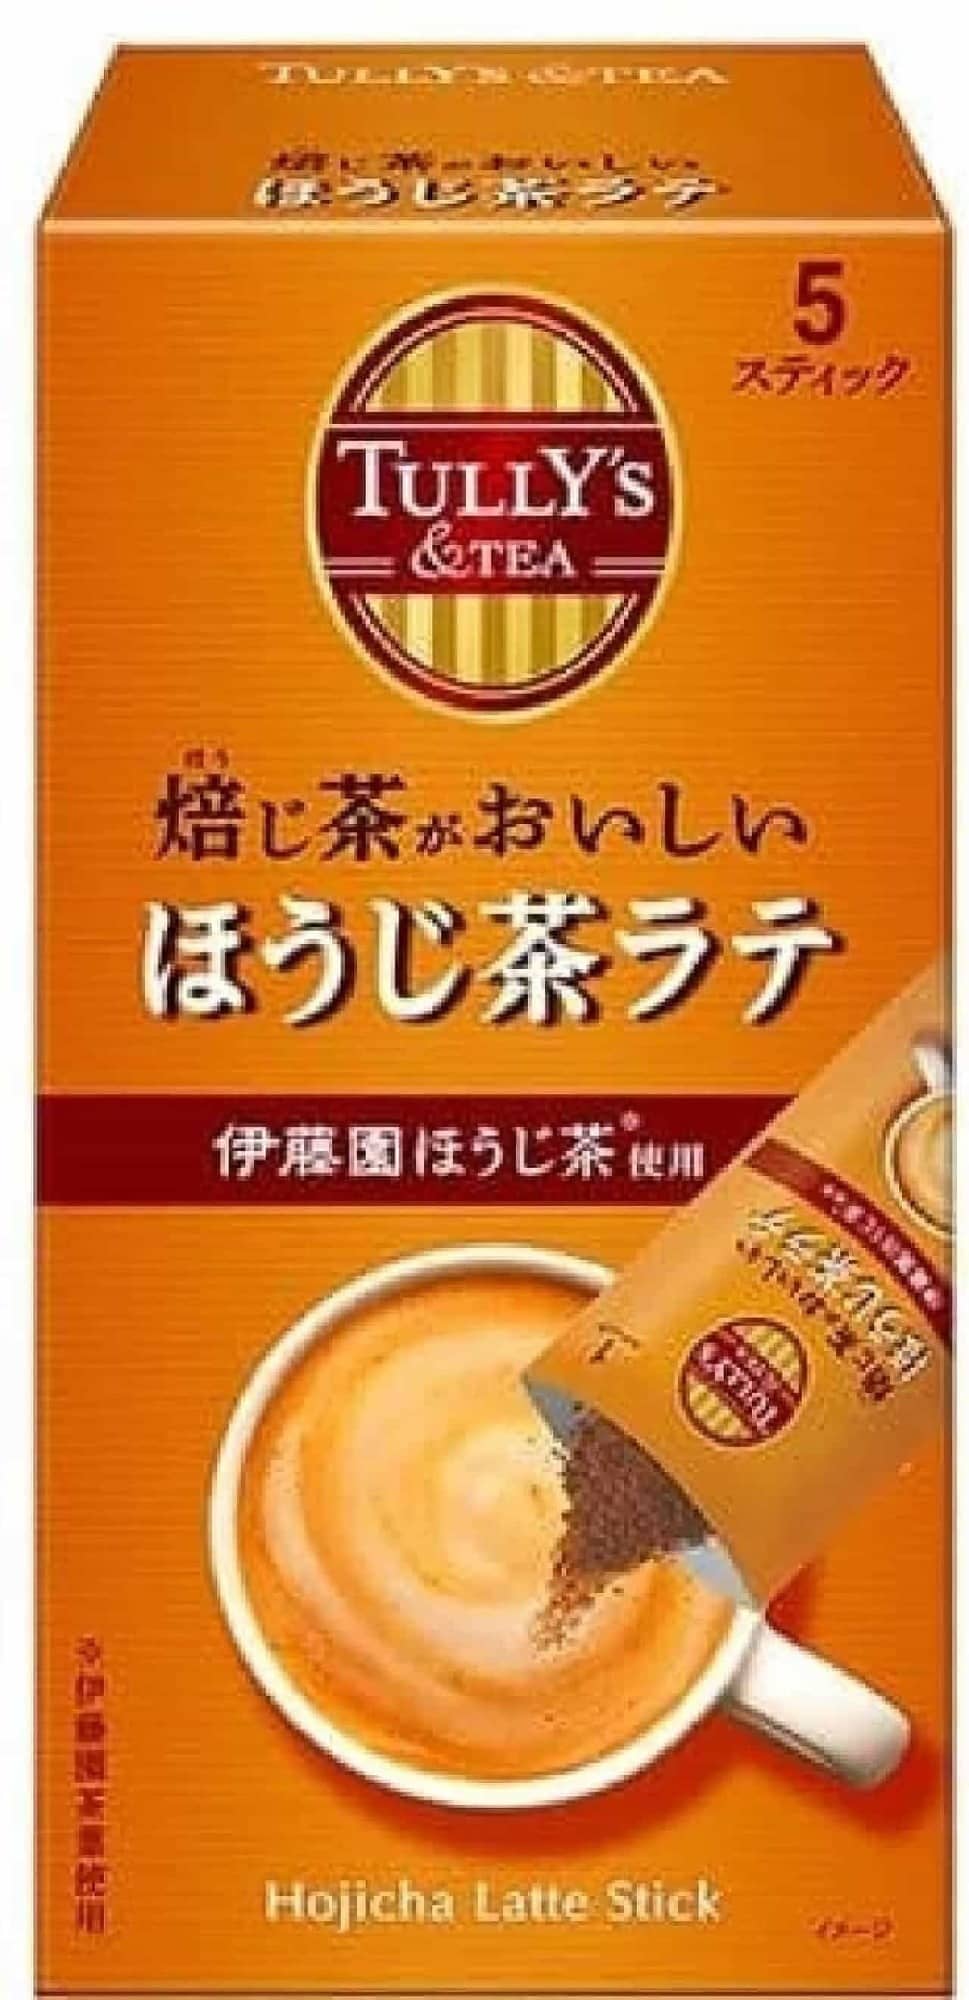 TULLY'S Tasty Roasted Green Tea Hojicha Latte Sticks 5-pack